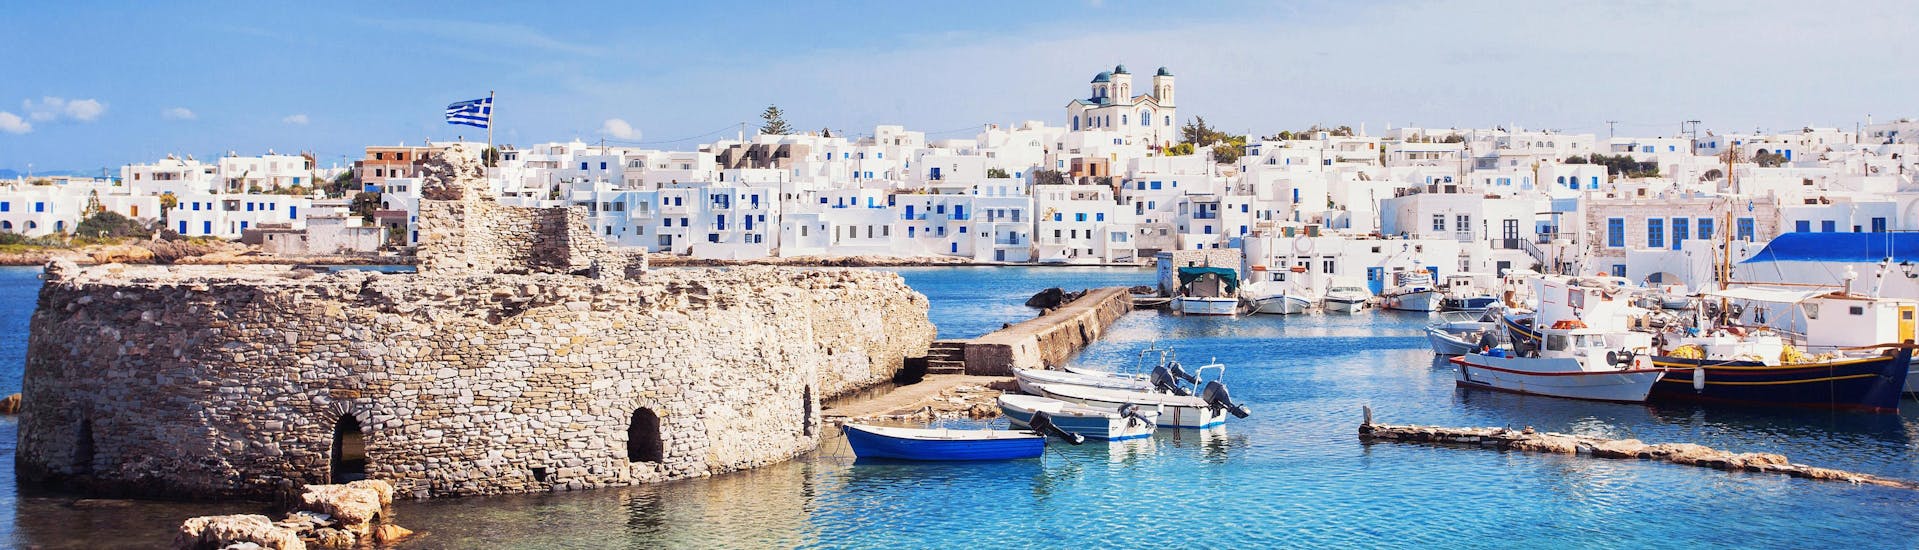 Ein Bild des Hafens von Naxos, ein beliebtes Ziel für alle die gerne Wassersport Aktivitäten in Griechenland machen.